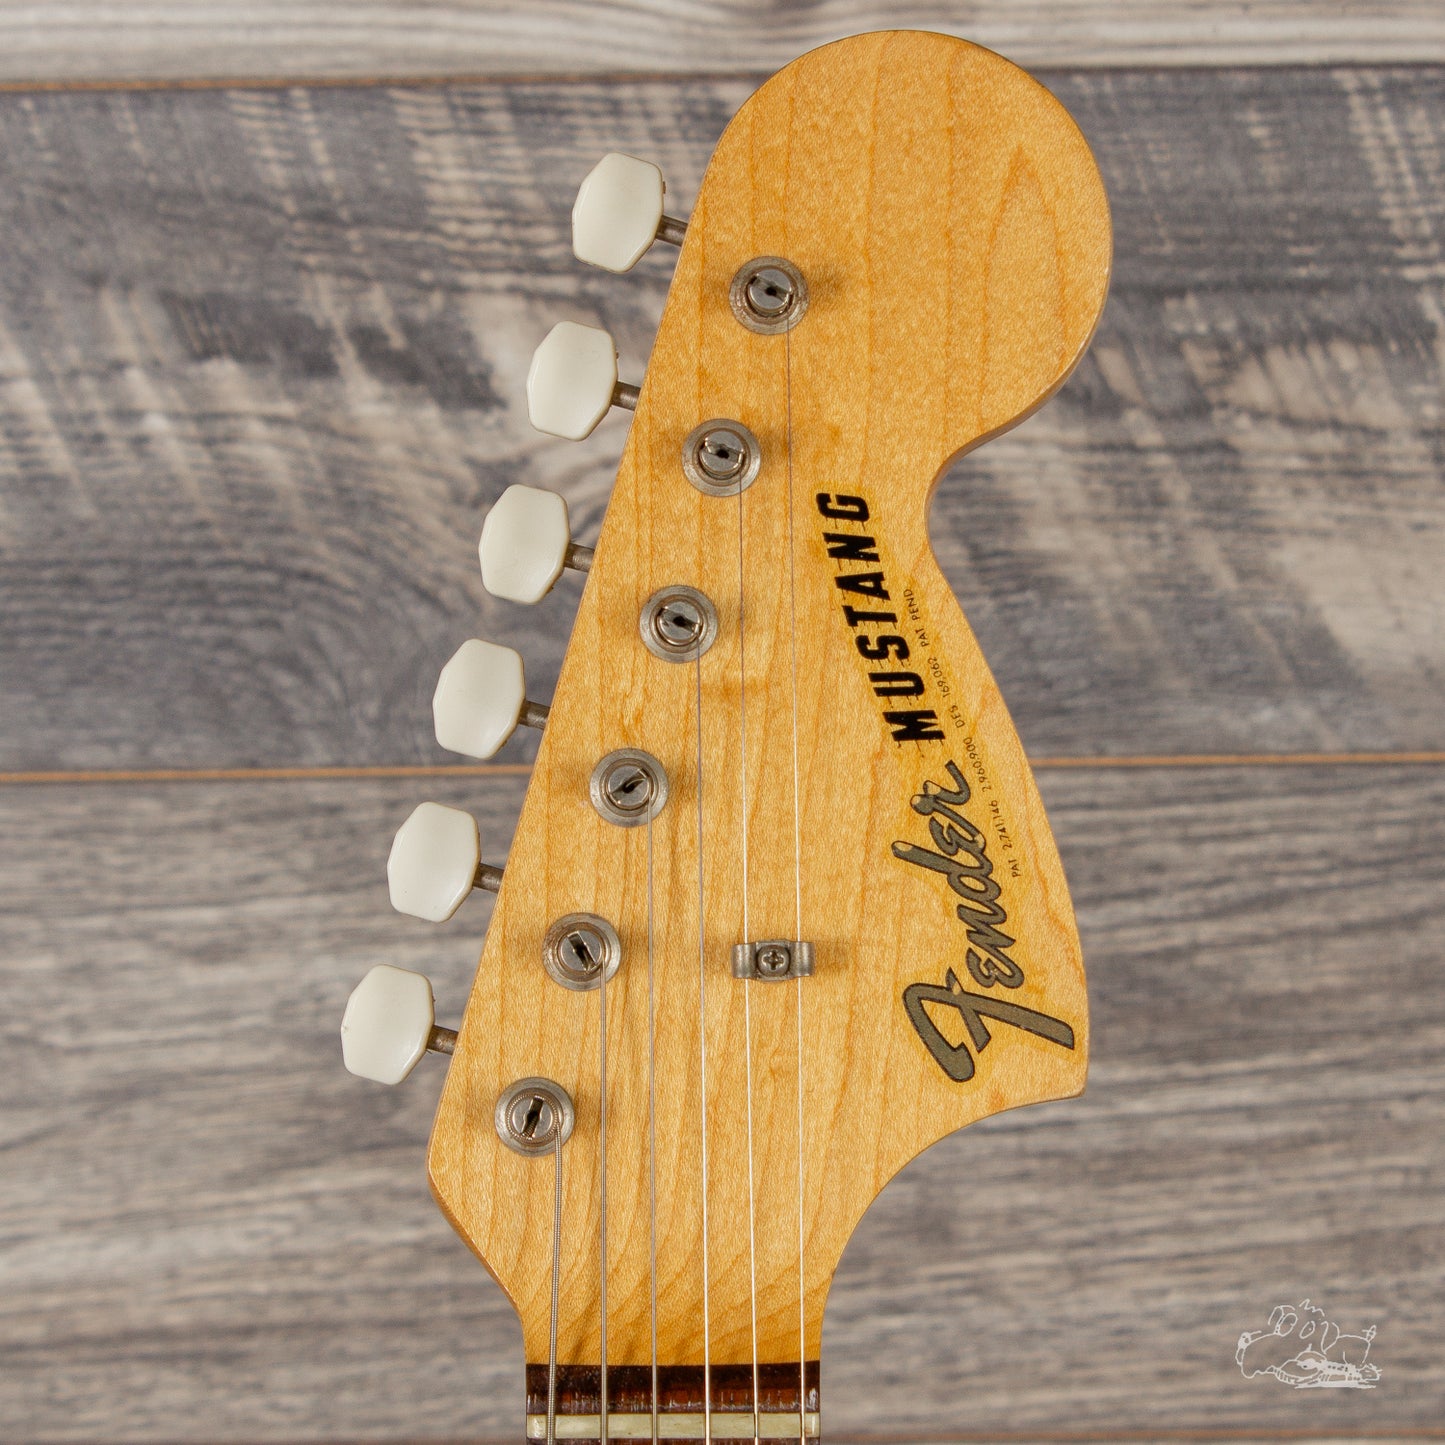 1966 Fender Mustang - Dakota Red